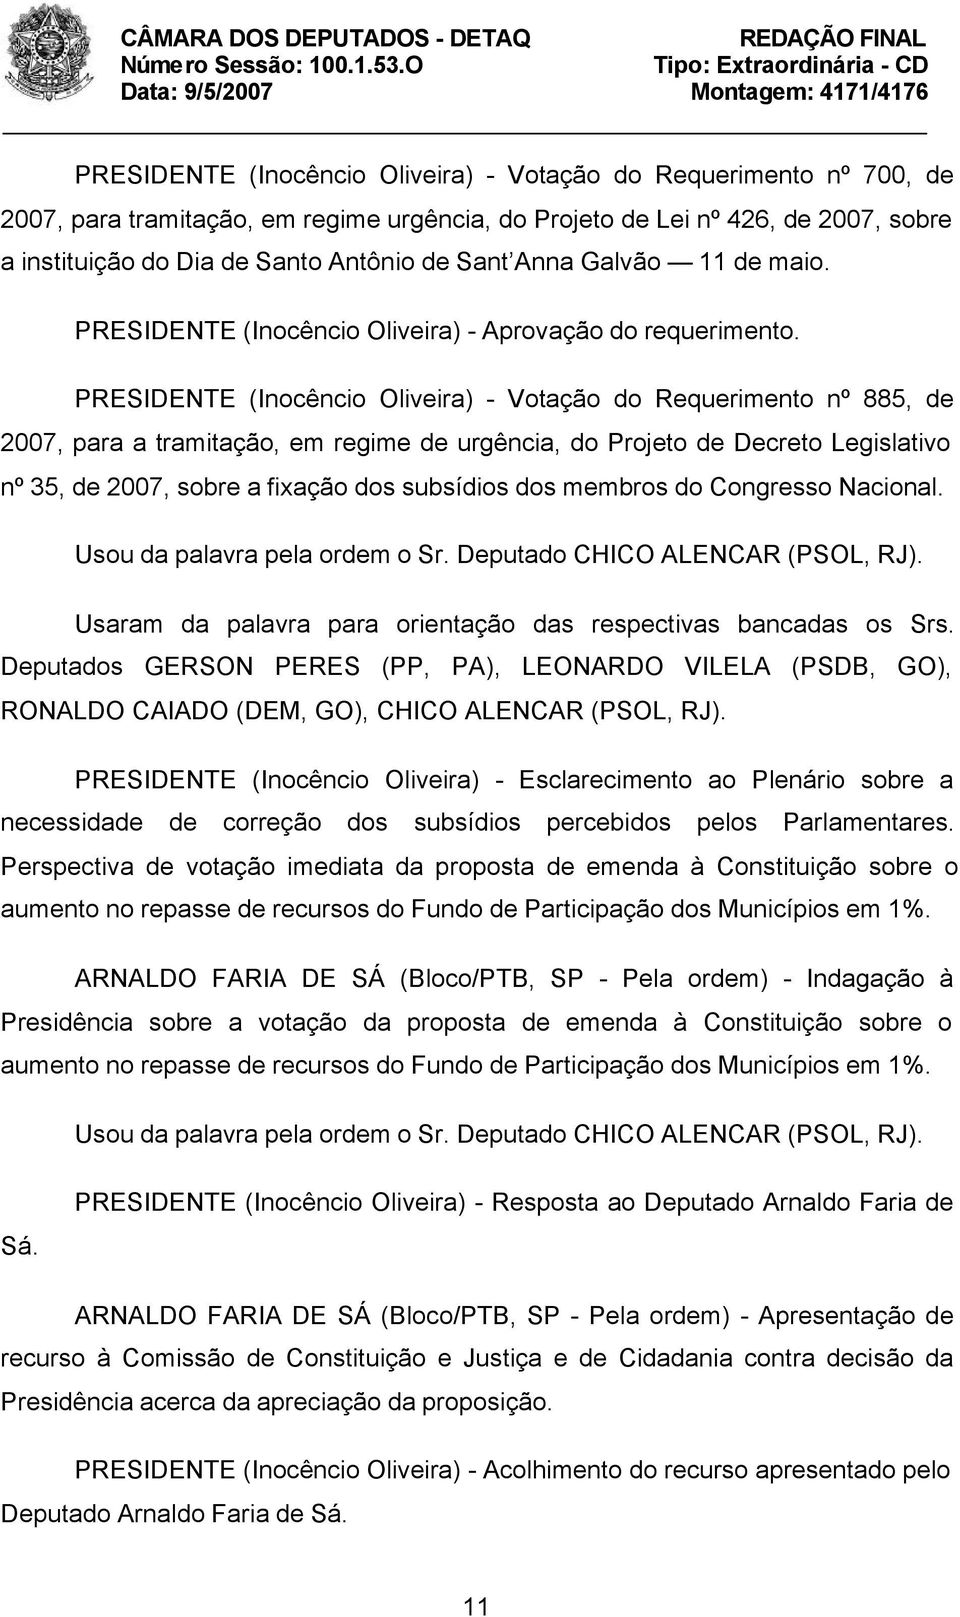 PRESIDENTE (Inocêncio Oliveira) - Votação do Requerimento nº 885, de 2007, para a tramitação, em regime de urgência, do Projeto de Decreto Legislativo nº 35, de 2007, sobre a fixação dos subsídios